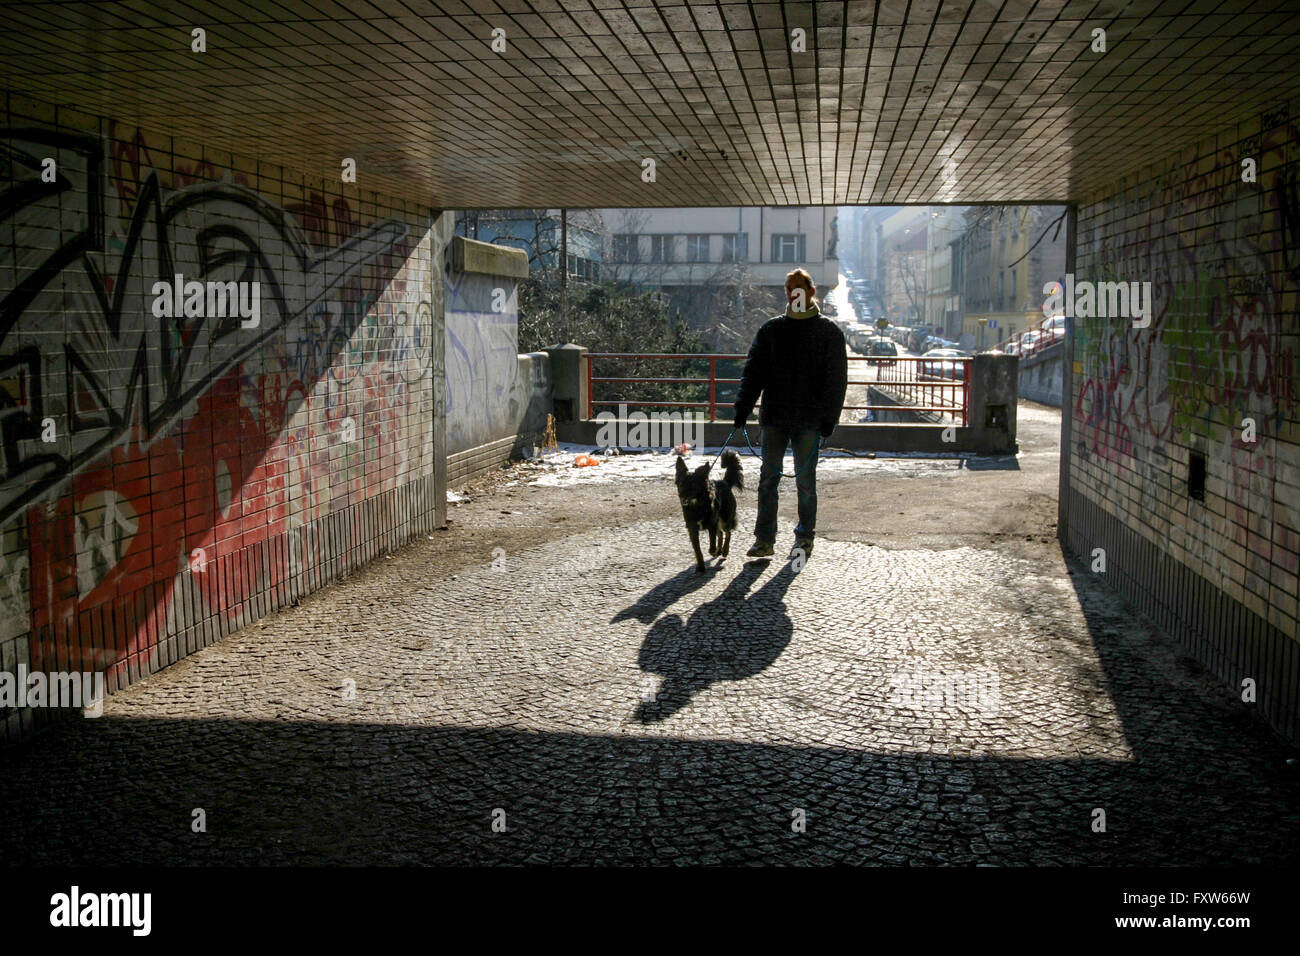 Ein Mann mit einem Hund ein Spaziergang, unterquert Prag Zizkov Mann und Hund gehen allein in einer städtischen Szene im Hintergrund, Silhouette mit Schatten auf dem Boden Stockfoto